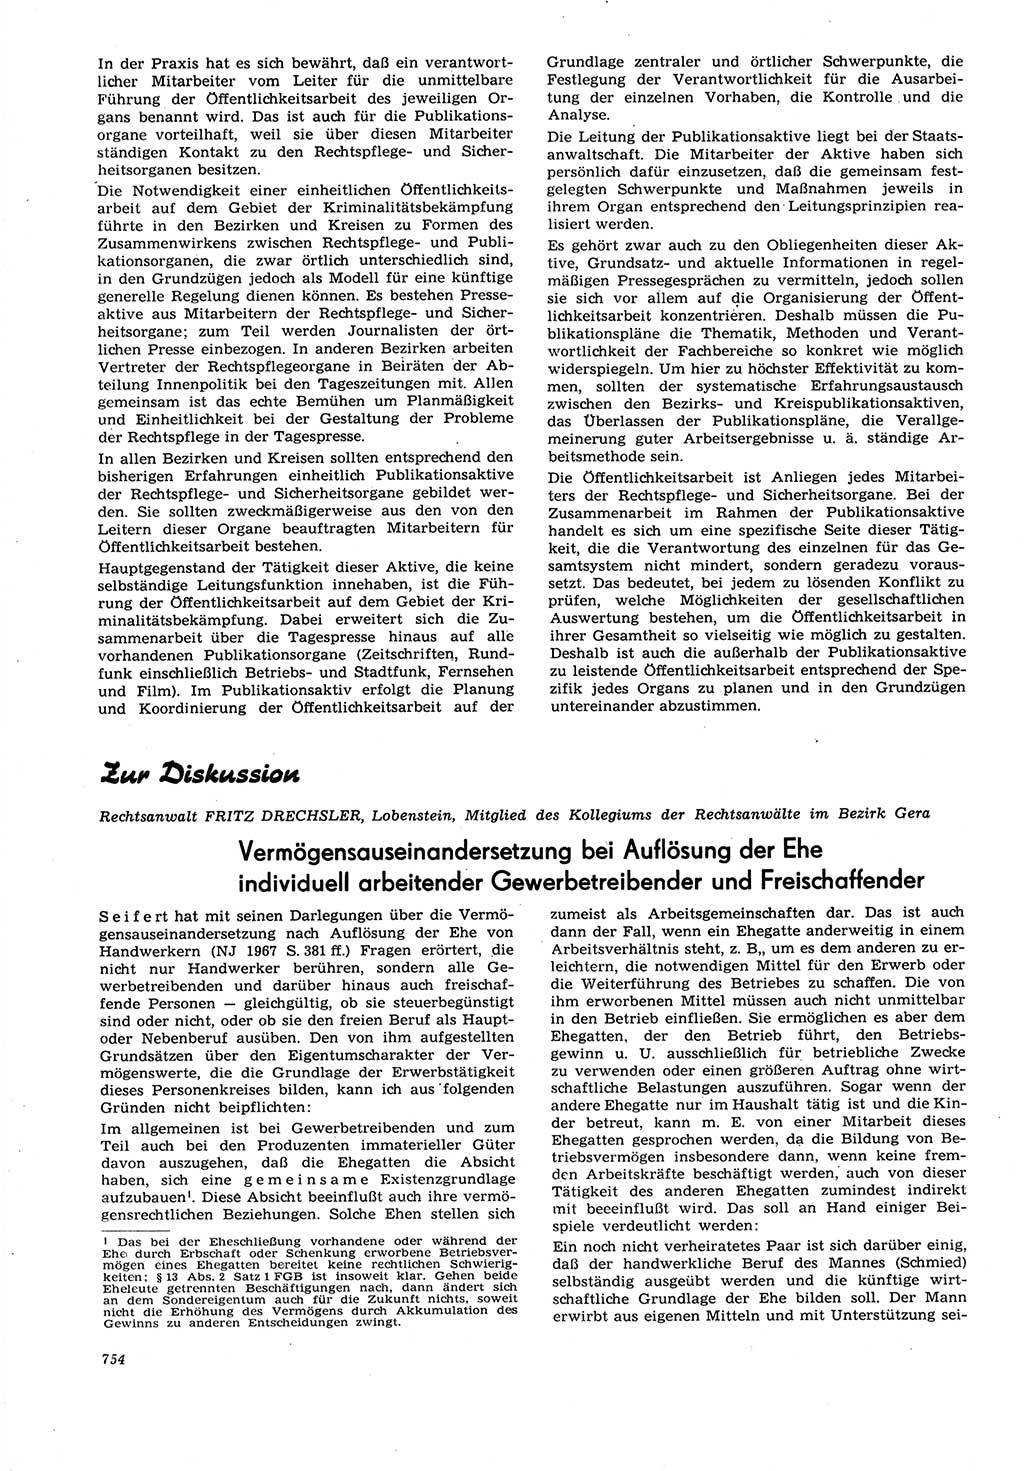 Neue Justiz (NJ), Zeitschrift für Recht und Rechtswissenschaft [Deutsche Demokratische Republik (DDR)], 21. Jahrgang 1967, Seite 754 (NJ DDR 1967, S. 754)